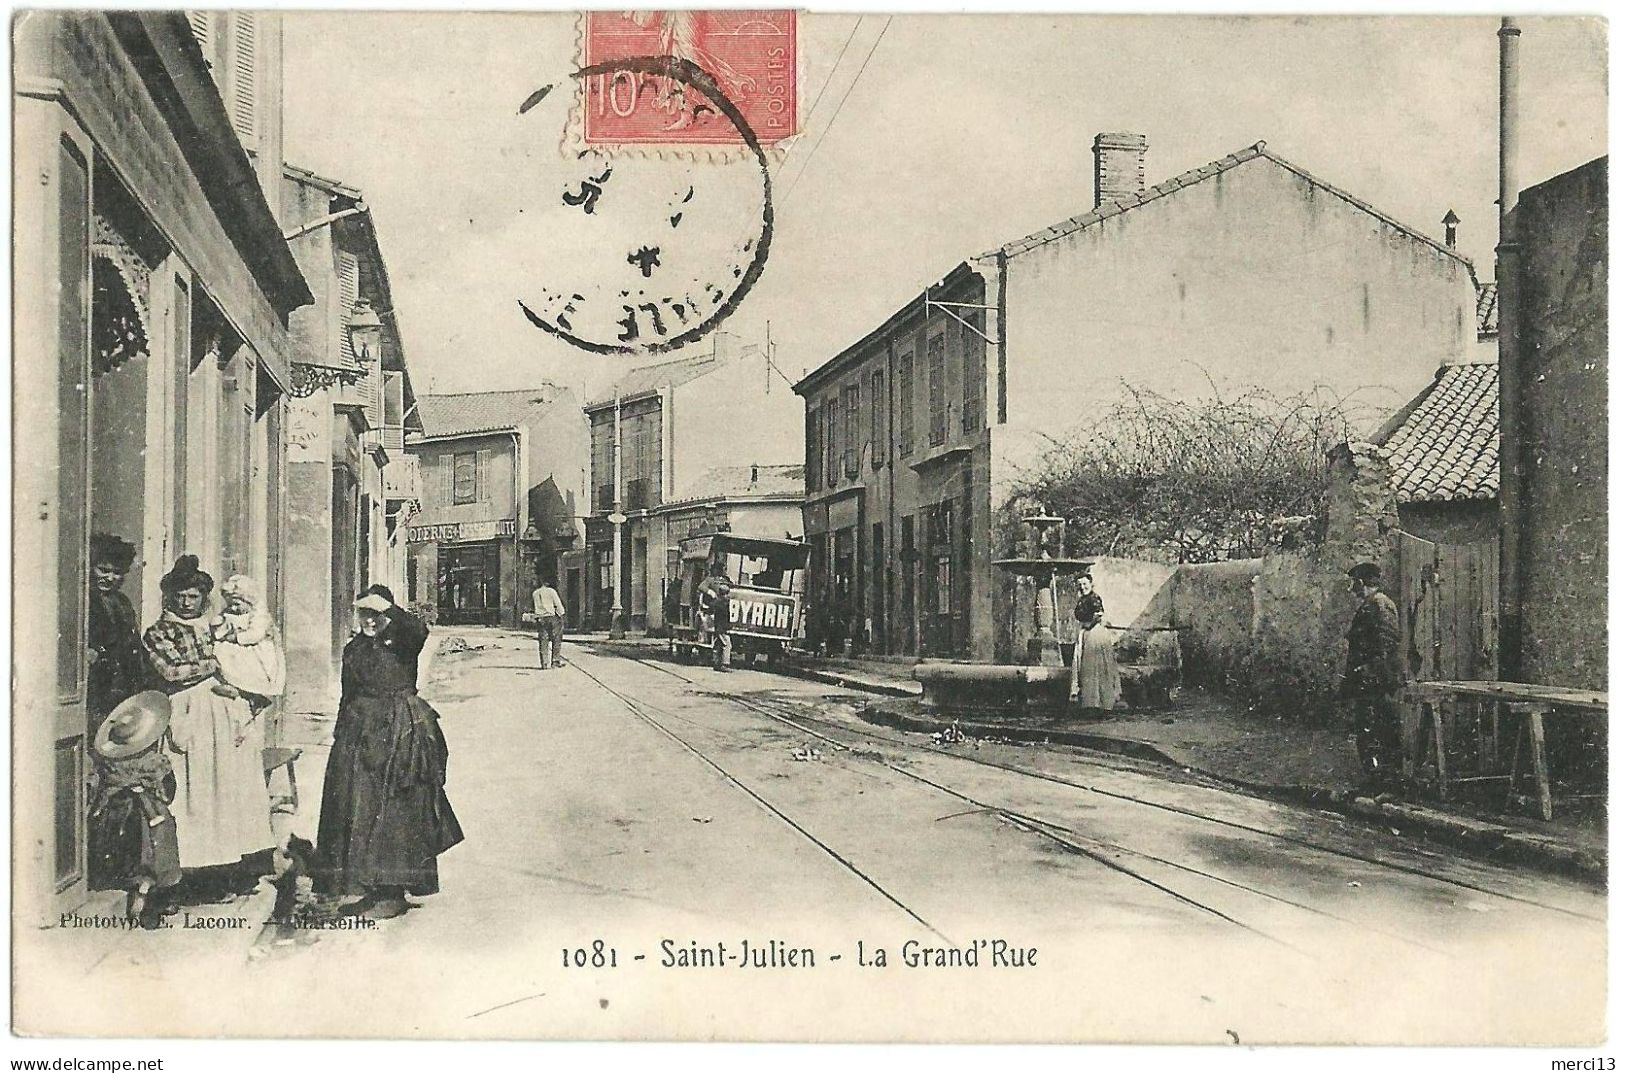 SAINT-JULIEN (13) – La Grand’Rue. Editeur Lacour, N° 1081. - Saint Barnabé, Saint Julien, Montolivet